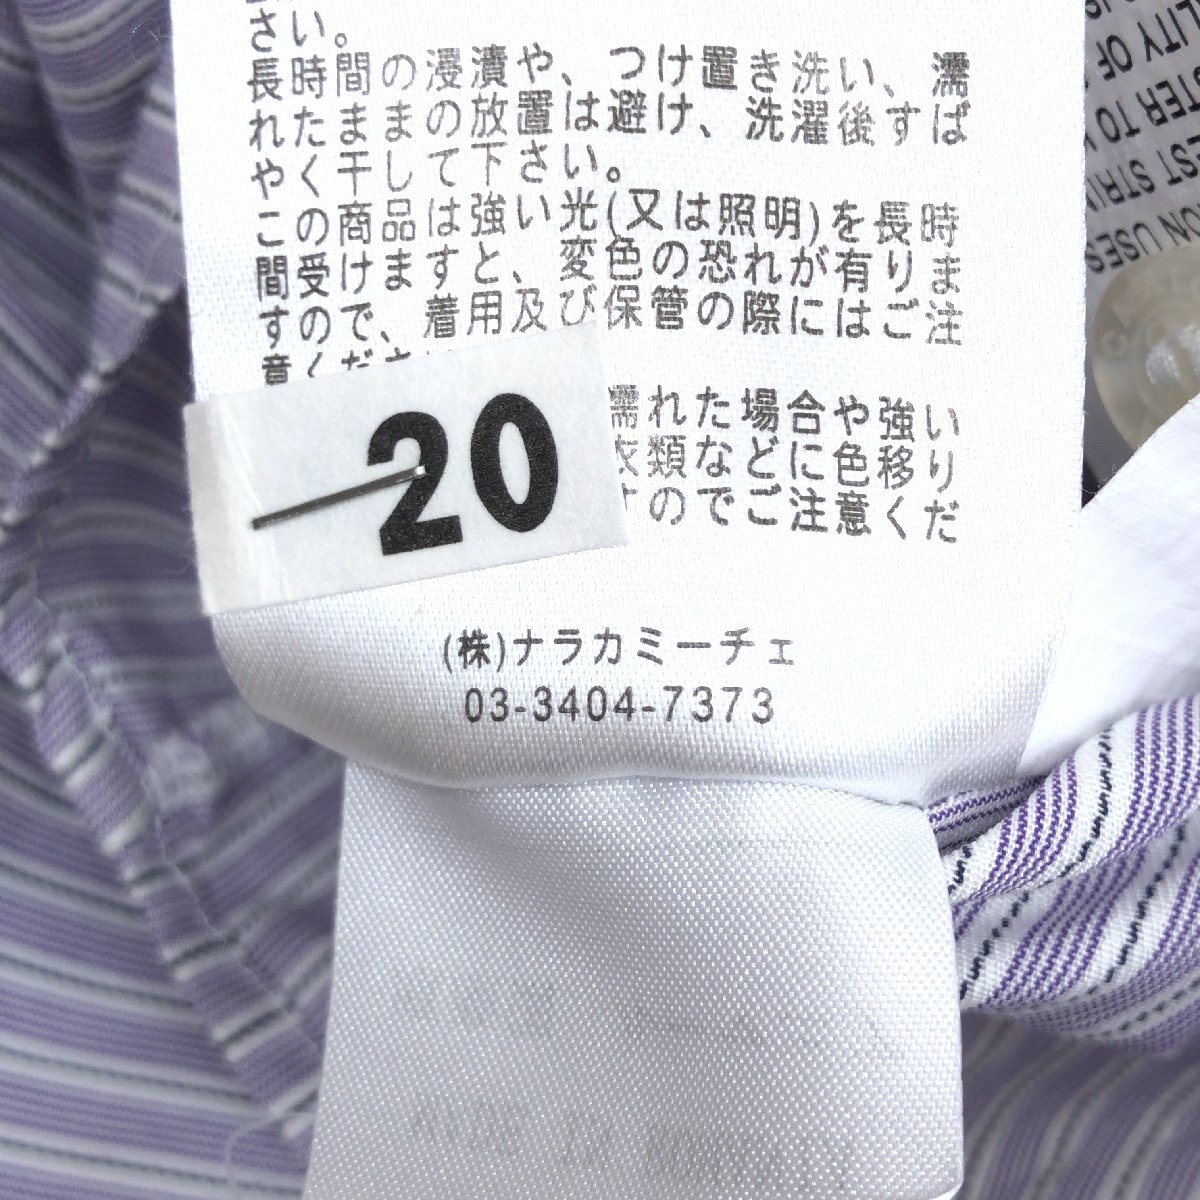  прекрасный товар NARACAMICIE Nara Camicie Skipper цвет полоса gya The - рубашка 1(M) лаванда серия блуза длинный рукав внутренний стандартный товар женский 